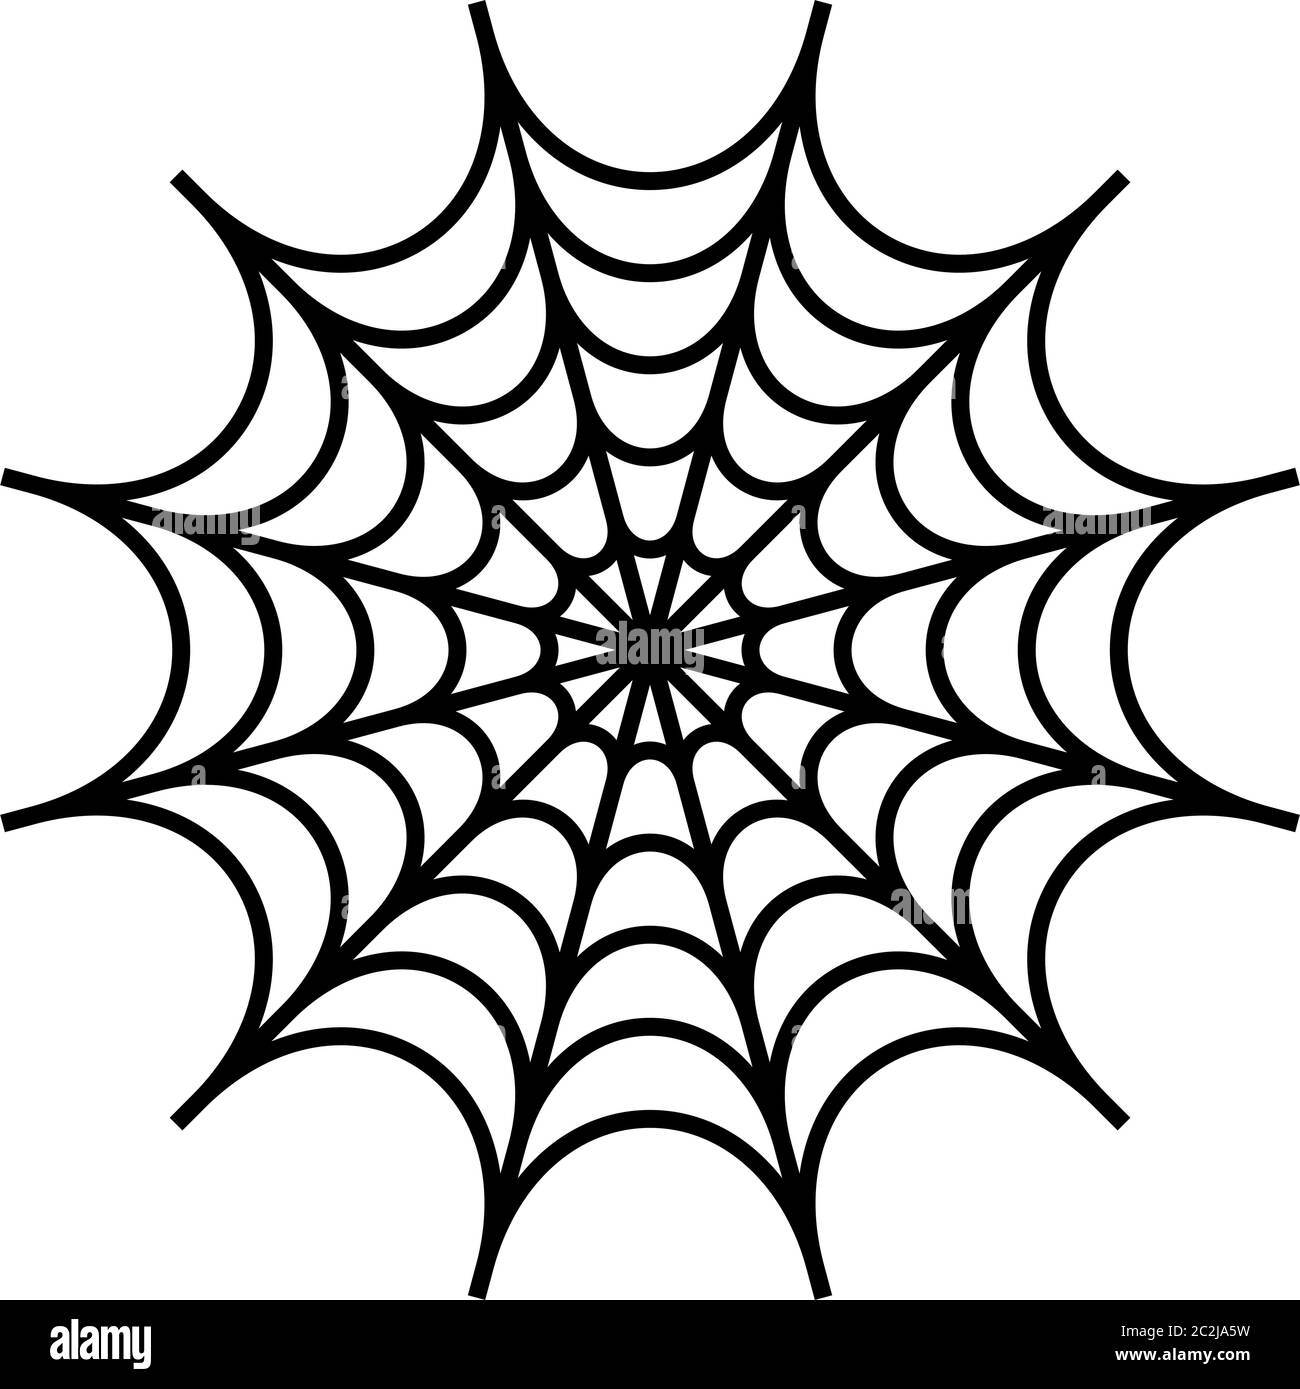 Spider web design Royalty Free Vector Image - VectorStock